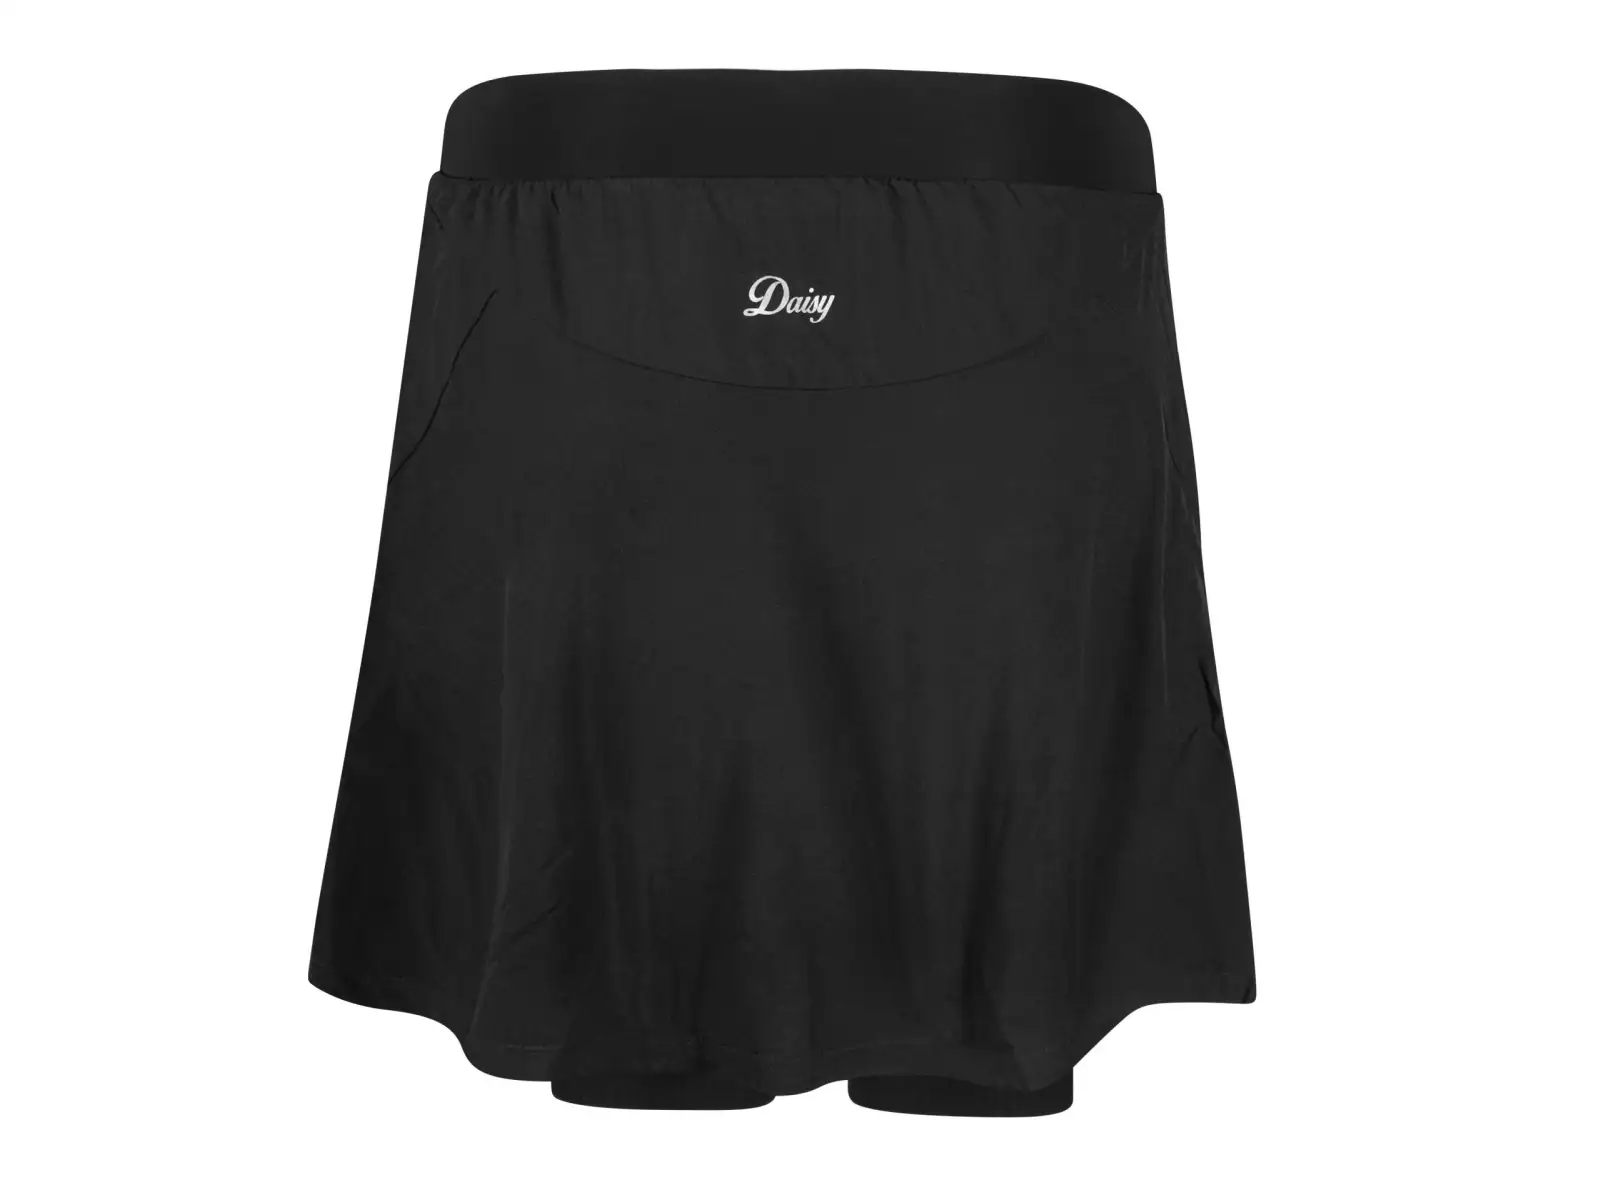 Force Daisy dámská cyklistická sukně s vložkou černá